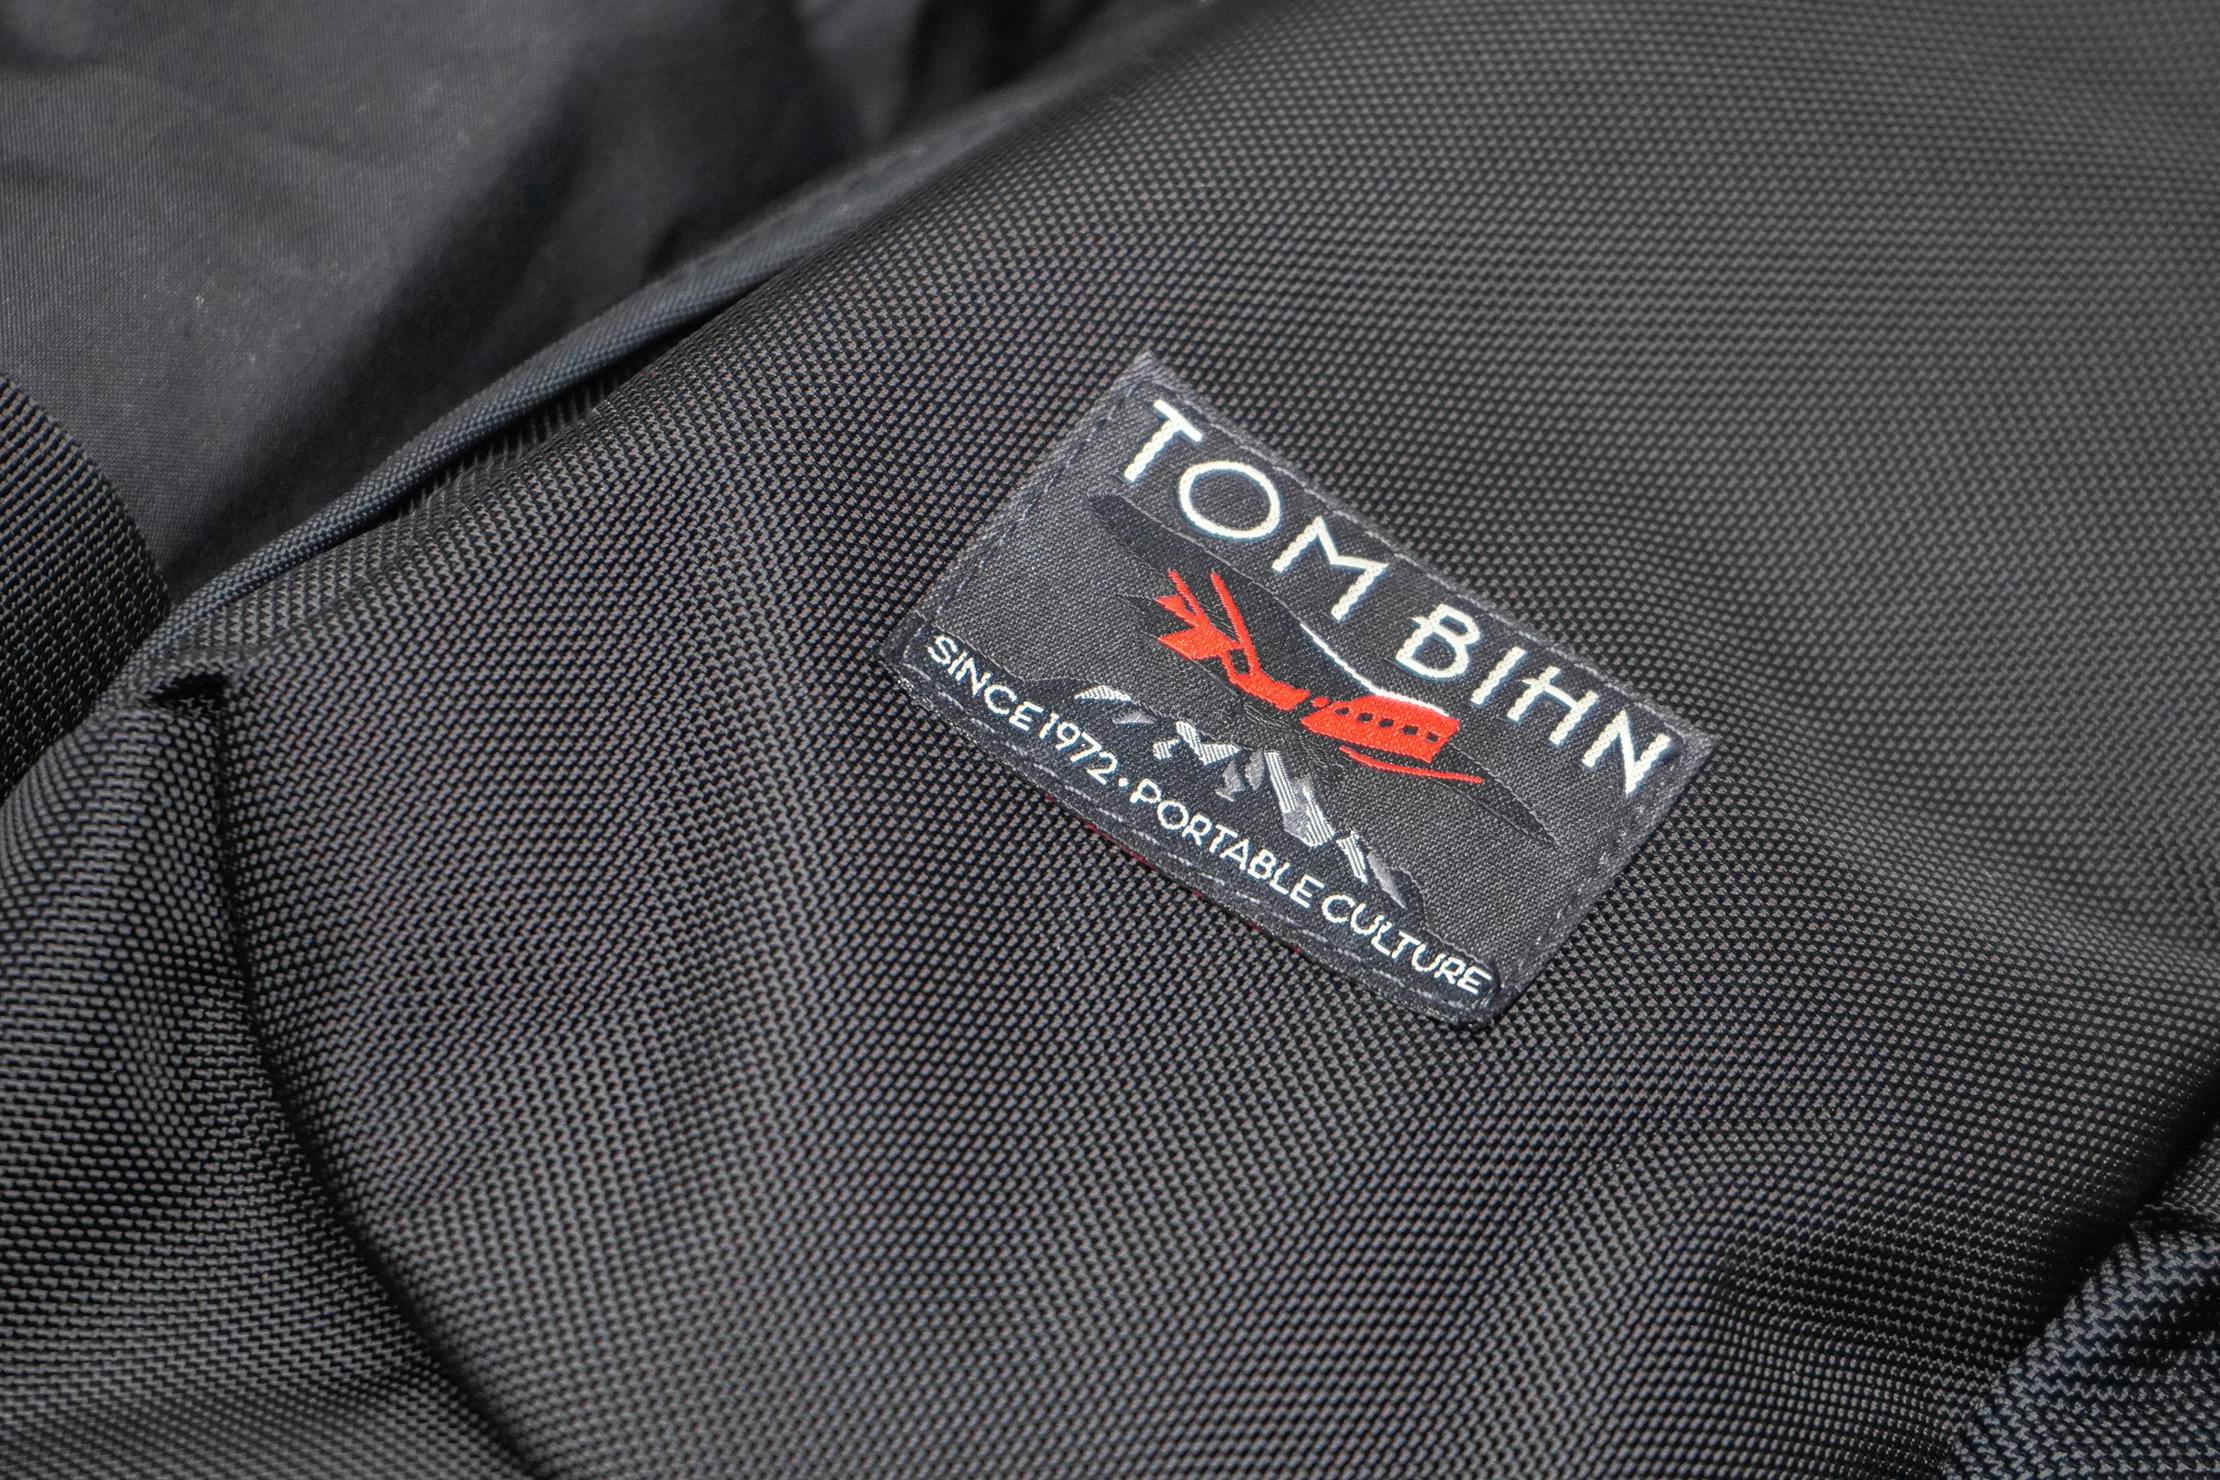 materiał i Logo torby mózgowej Tom Bihn